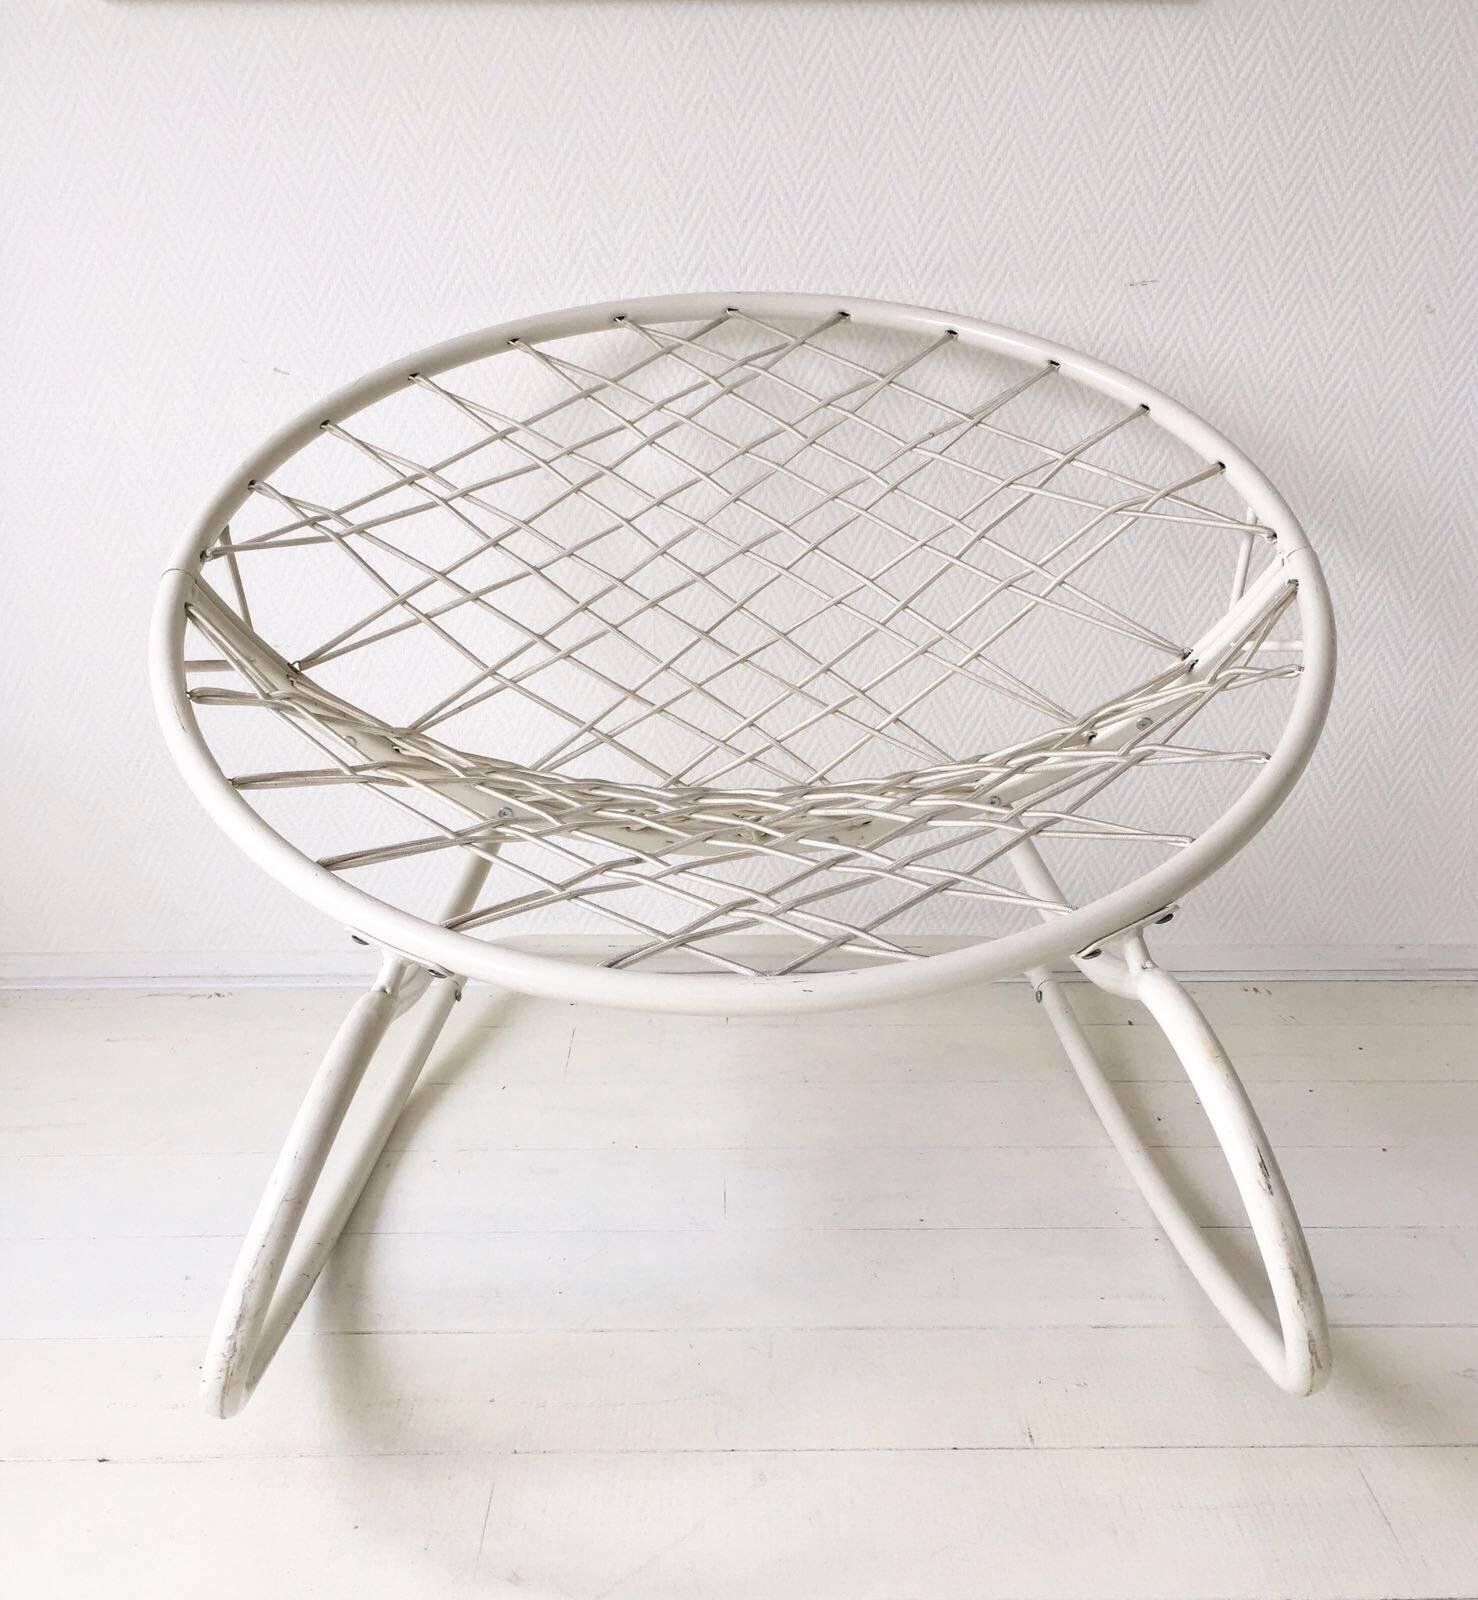 Dans la série PS, Ikea a produit ce fauteuil lounge/rocking, conçu par Niels Gammelgaard. La chaise est composée d'une base en métal émaillé (blanc cassé) et de cordes élastiques qui forment le rembourrage. La chaise n'est plus en production !